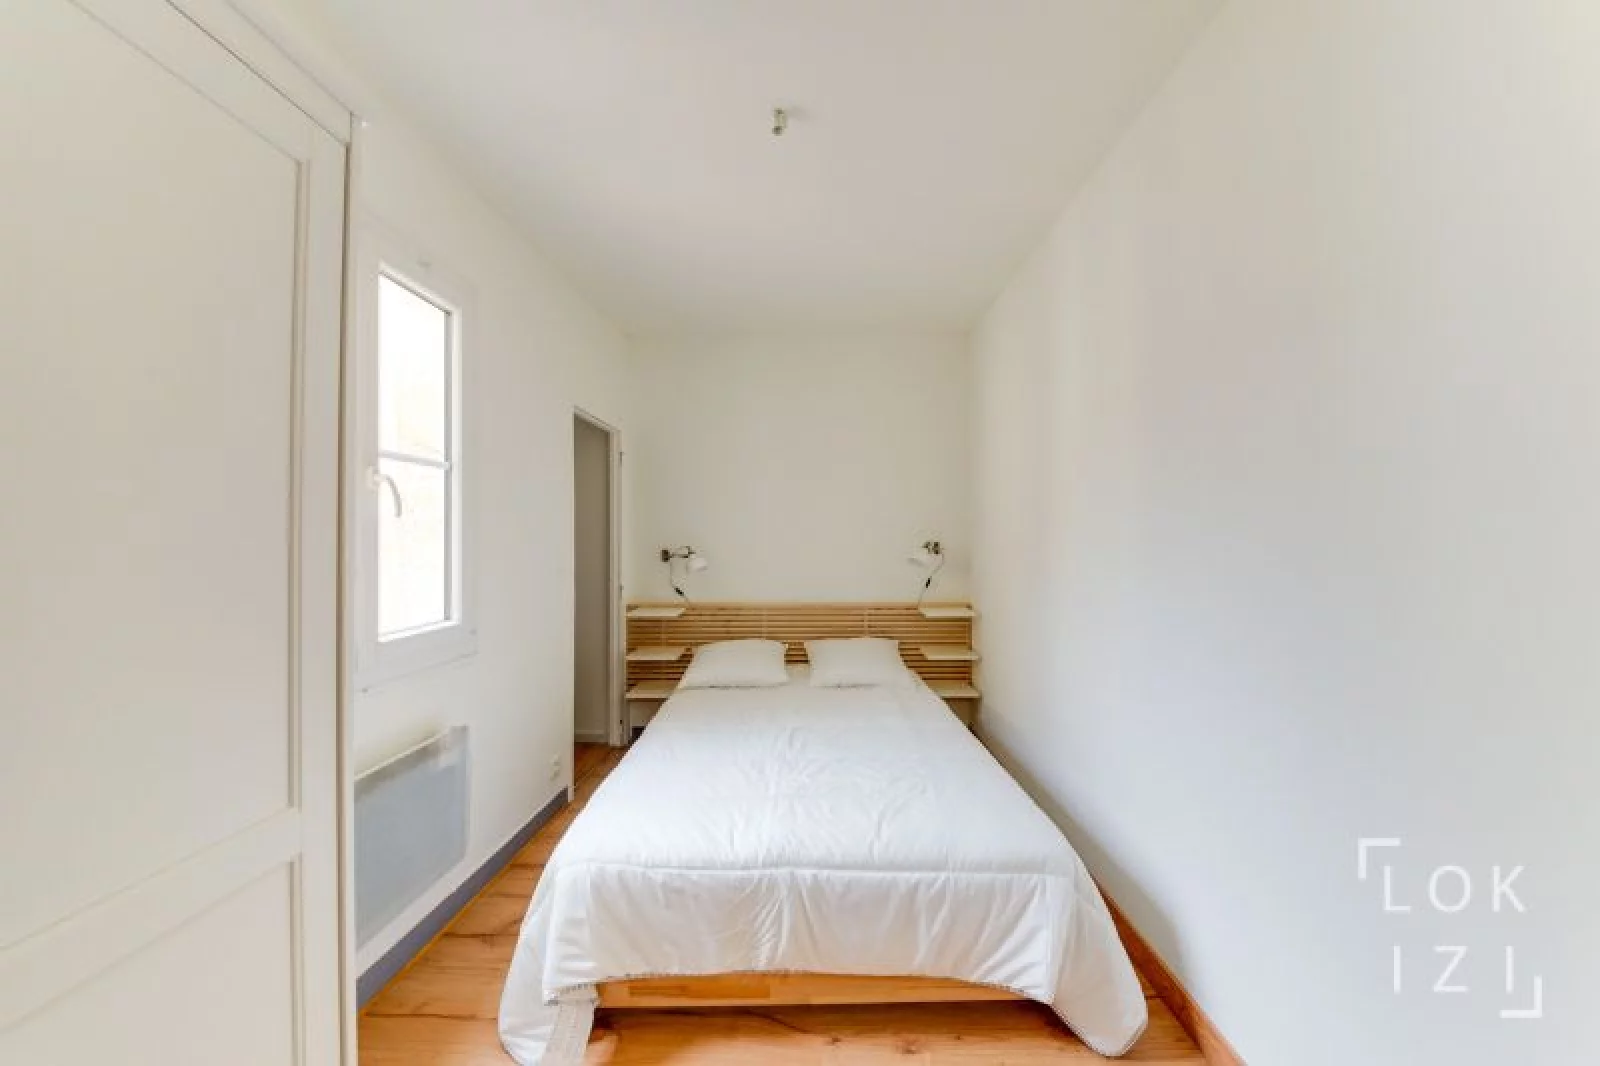 Location appartement meublé 3 pièces 45m² (Bordeaux - Victoire)